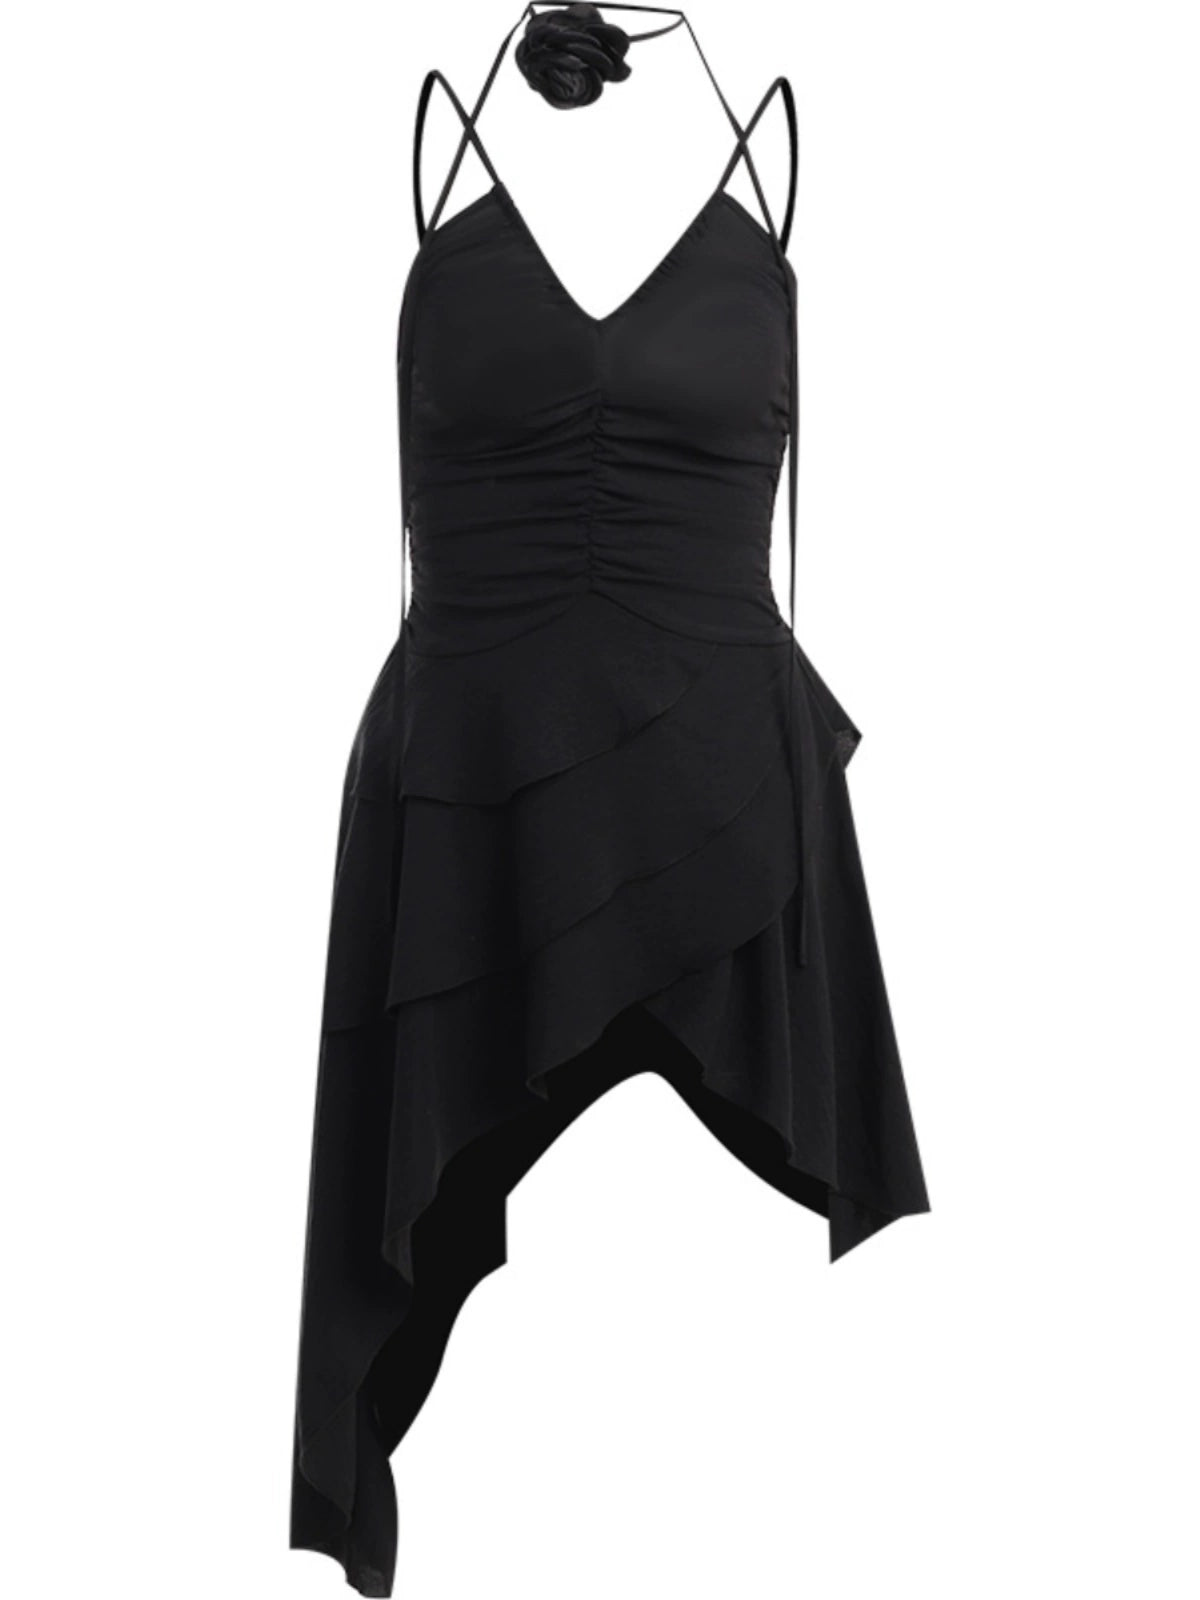 Girlsat18 Black Sling Dress